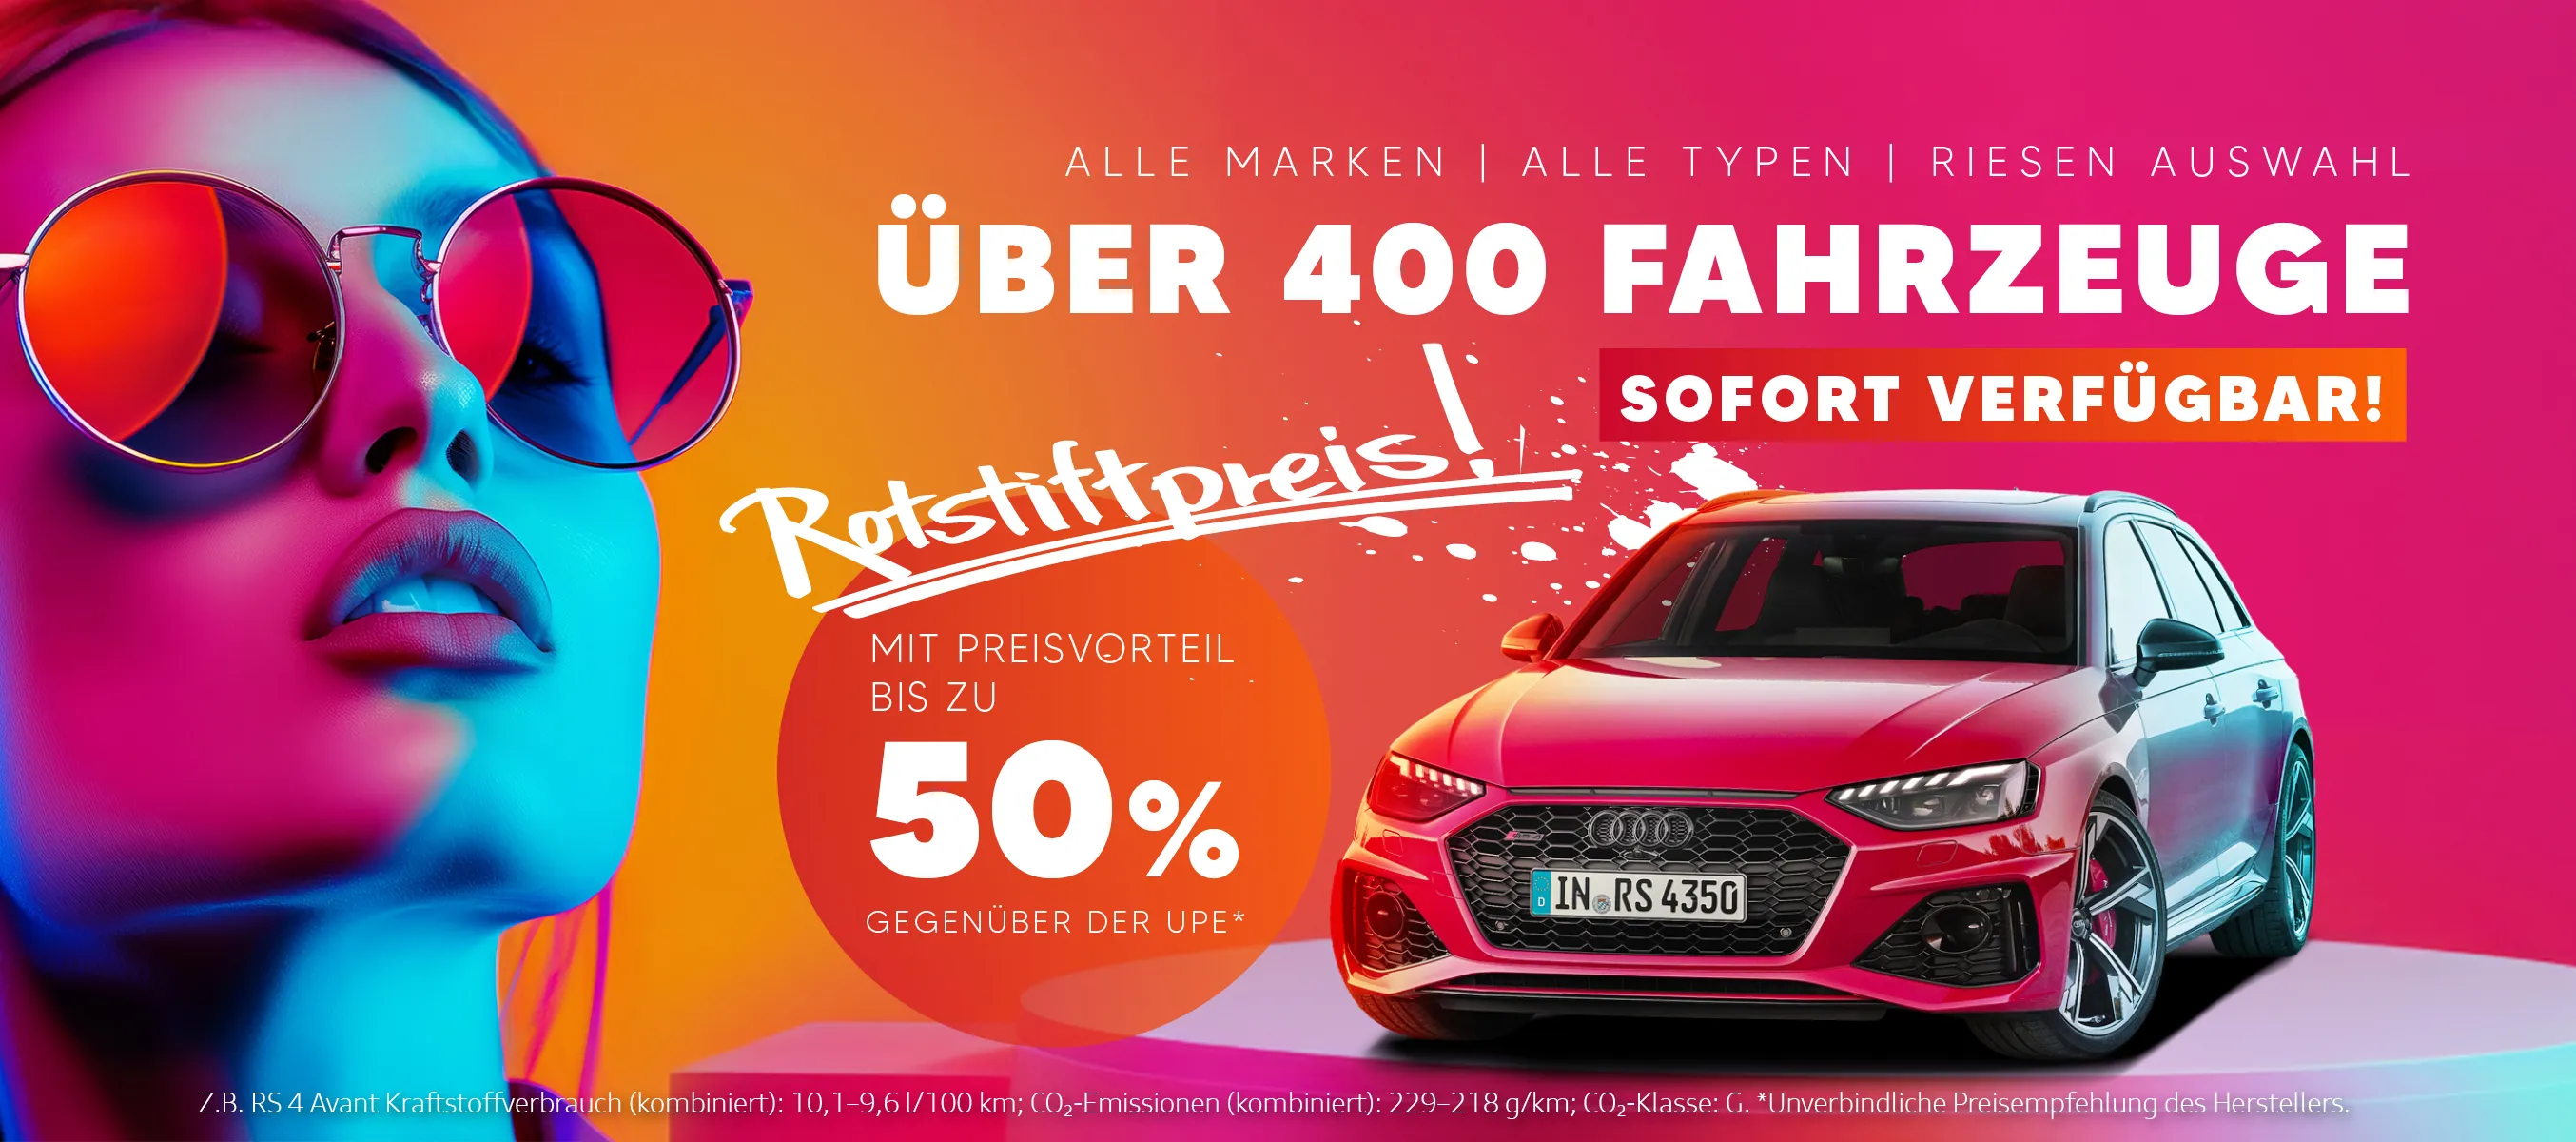 Rotstiftpreise im Autohaus Bautzen Ost in Bautzen - Riesen Auswahl an Fahrzeugen PKW alle Marken Volkswagen Audi Skoda SEAT mit Preisreduzierung 50% unter UPE